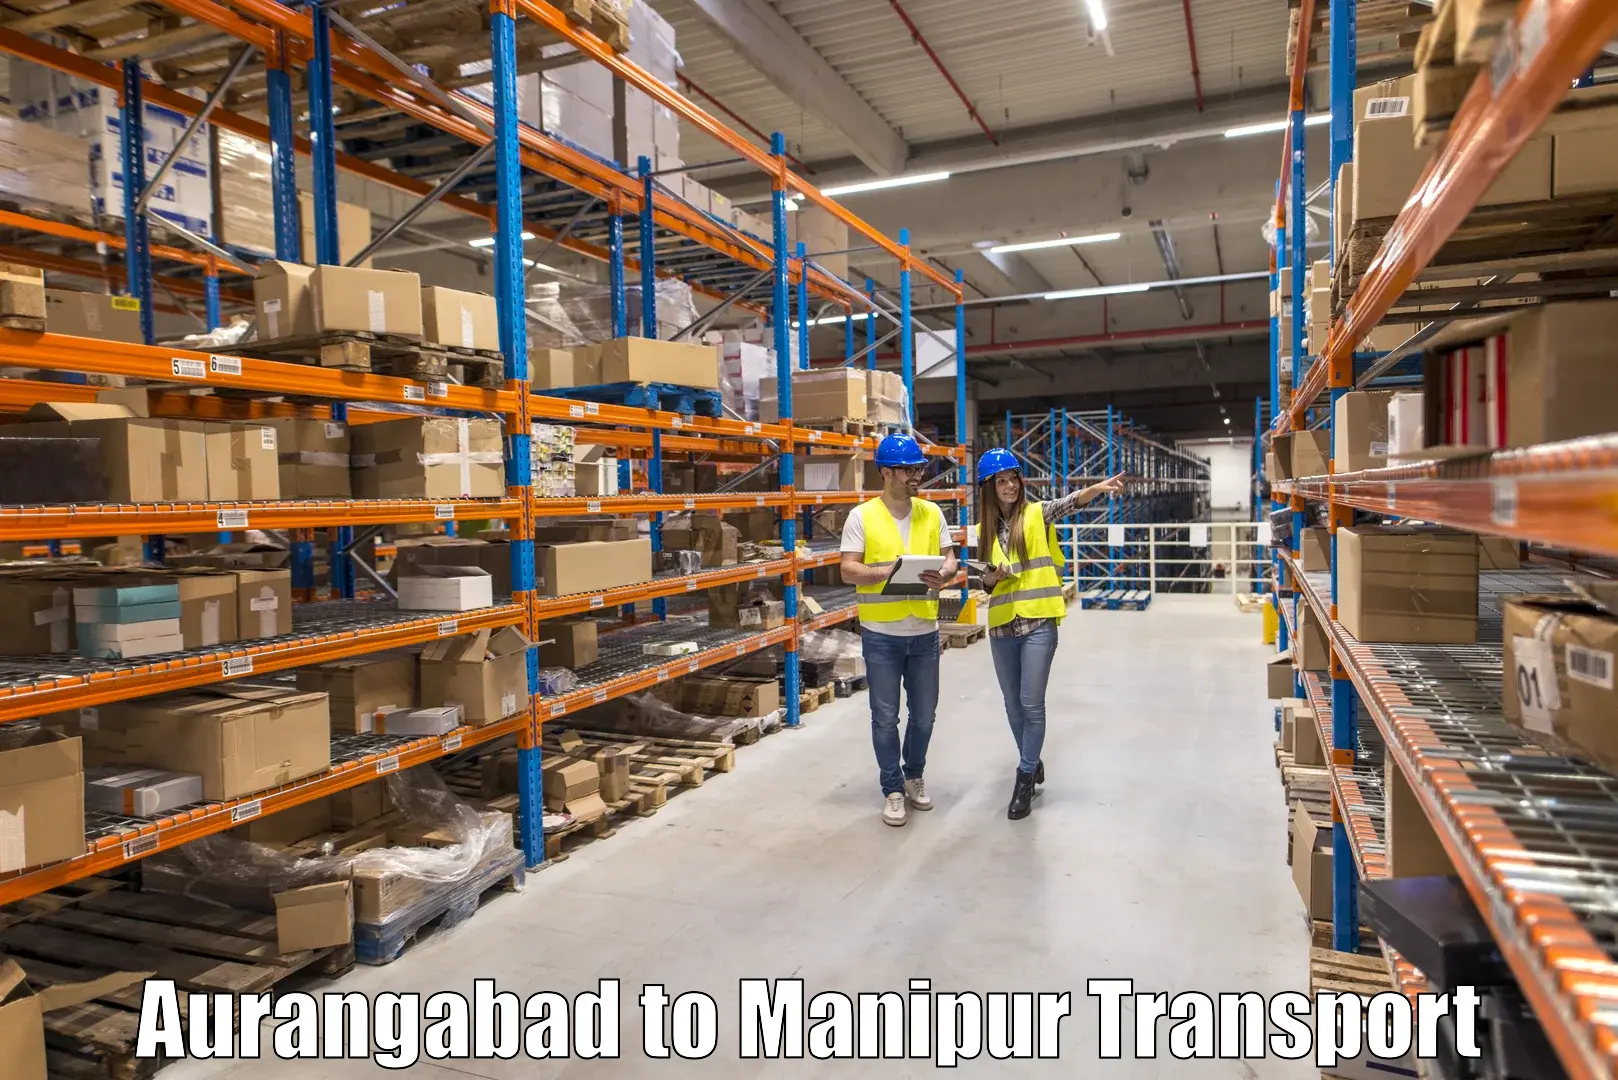 Interstate transport services Aurangabad to Churachandpur